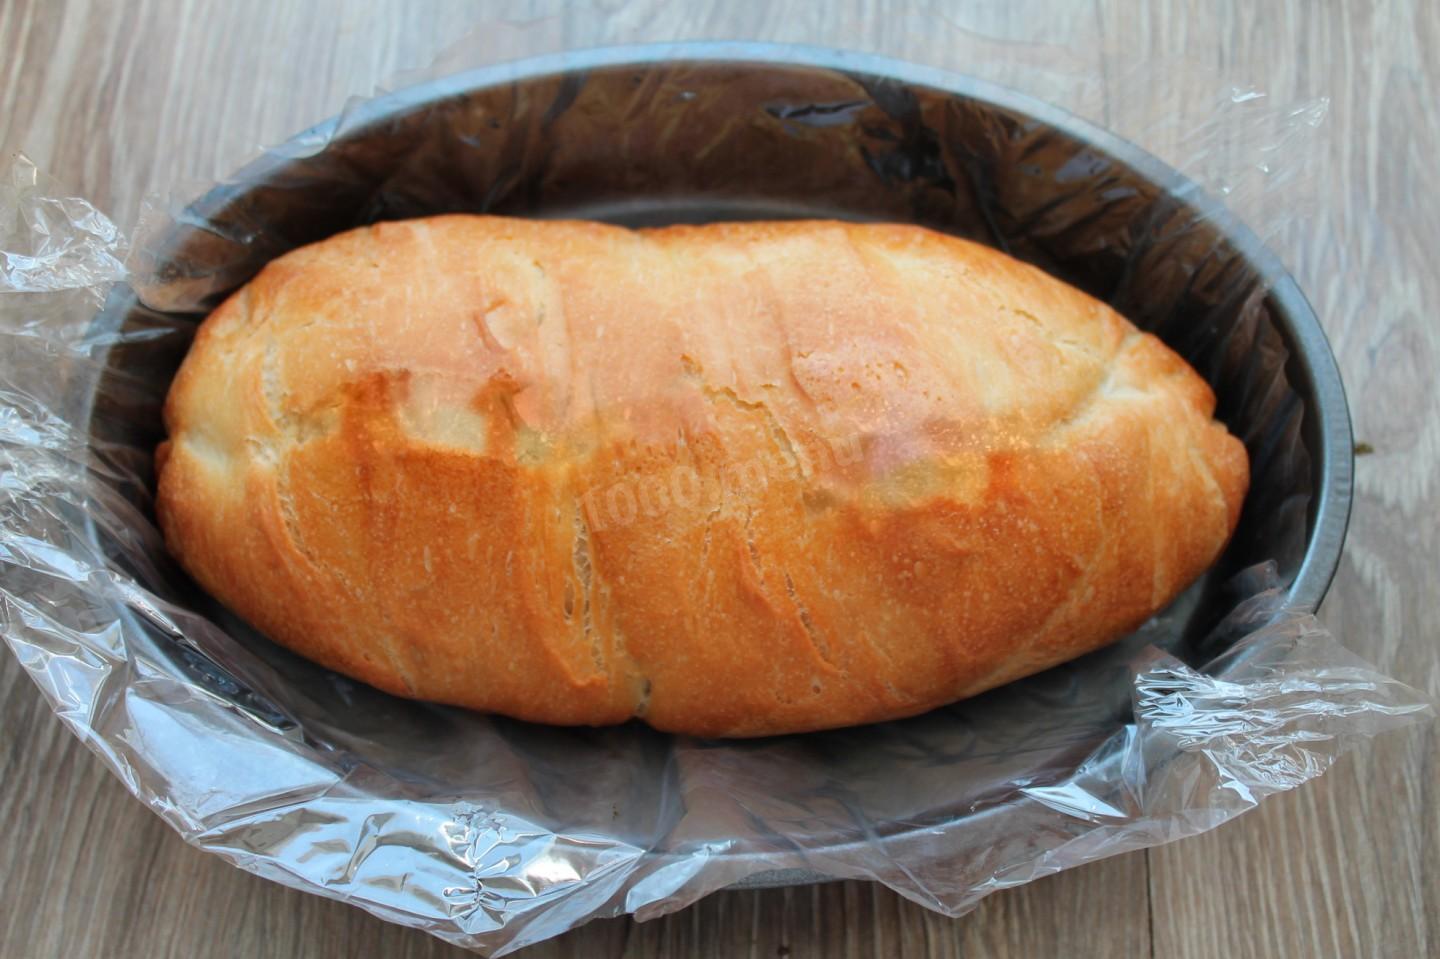 Хлеб в духовке в рукаве. Форма для запекания батона. Хлеб в рукаве для запекания. Хлеб в пакете для запекания в духовке. Домашний хлеб в рукаве для запекания в духовке.